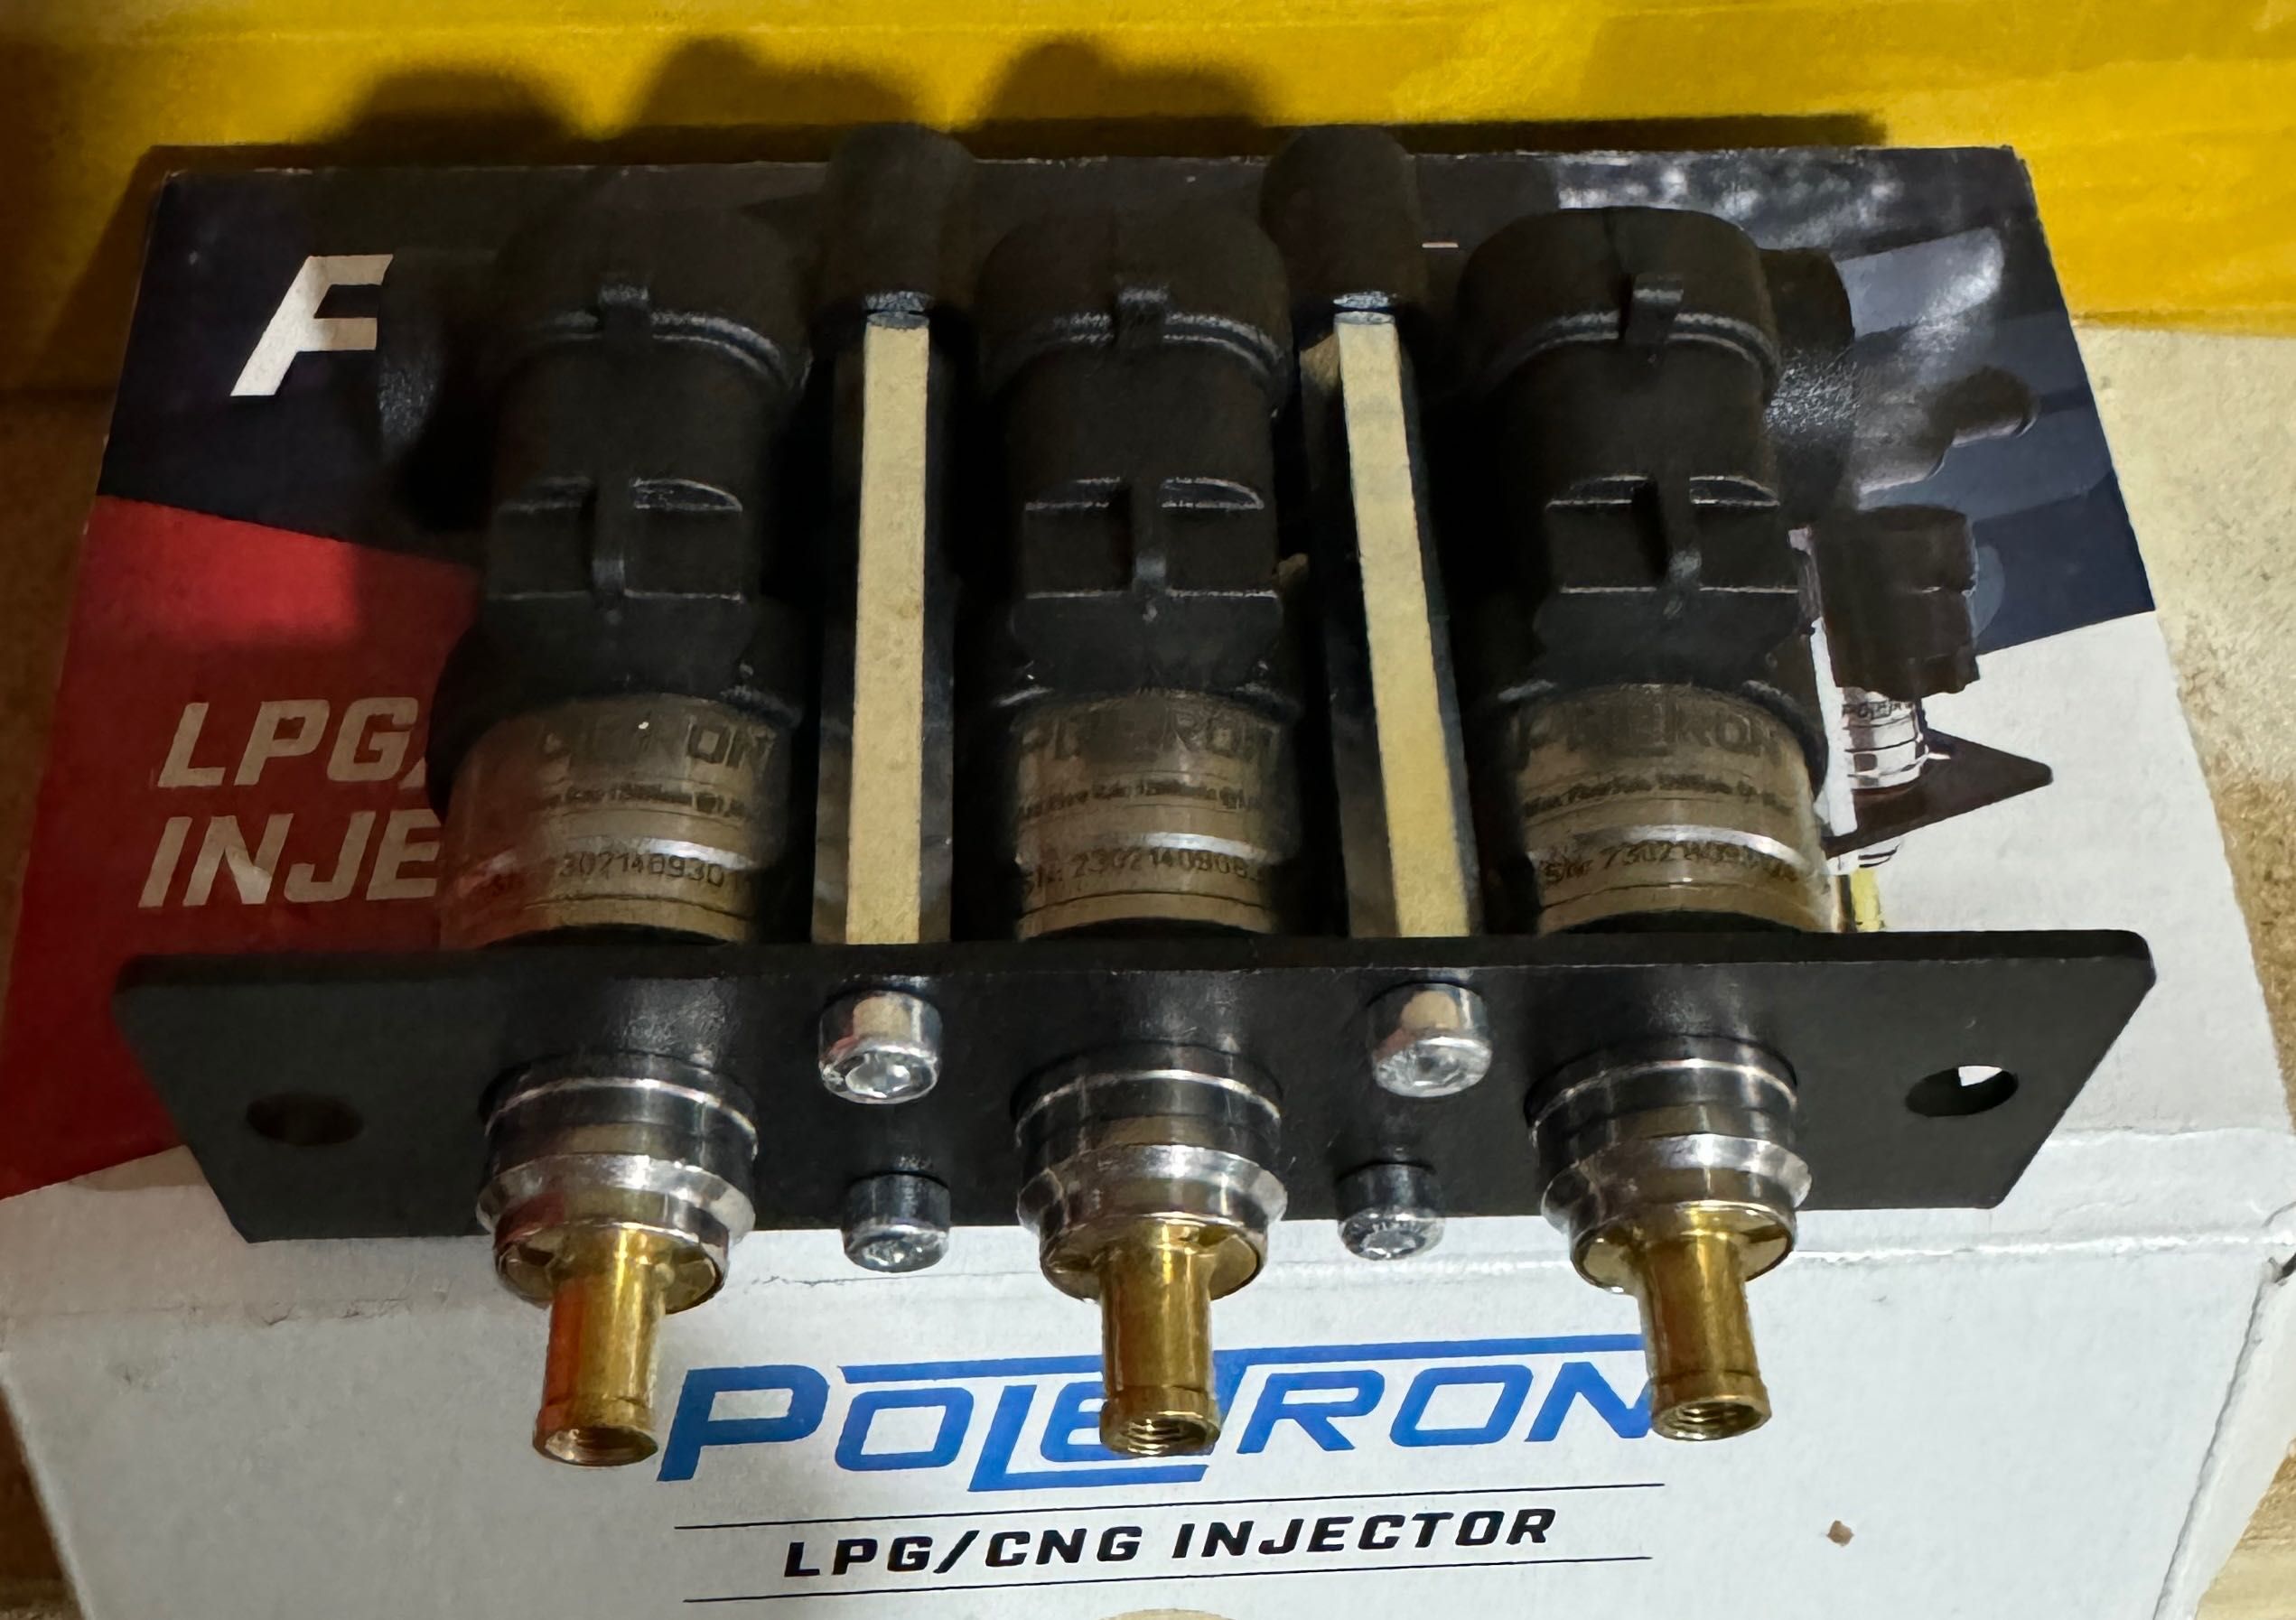 Продаётся новый редуктор пропановый и инжектор (форсунка) «Poletron”.